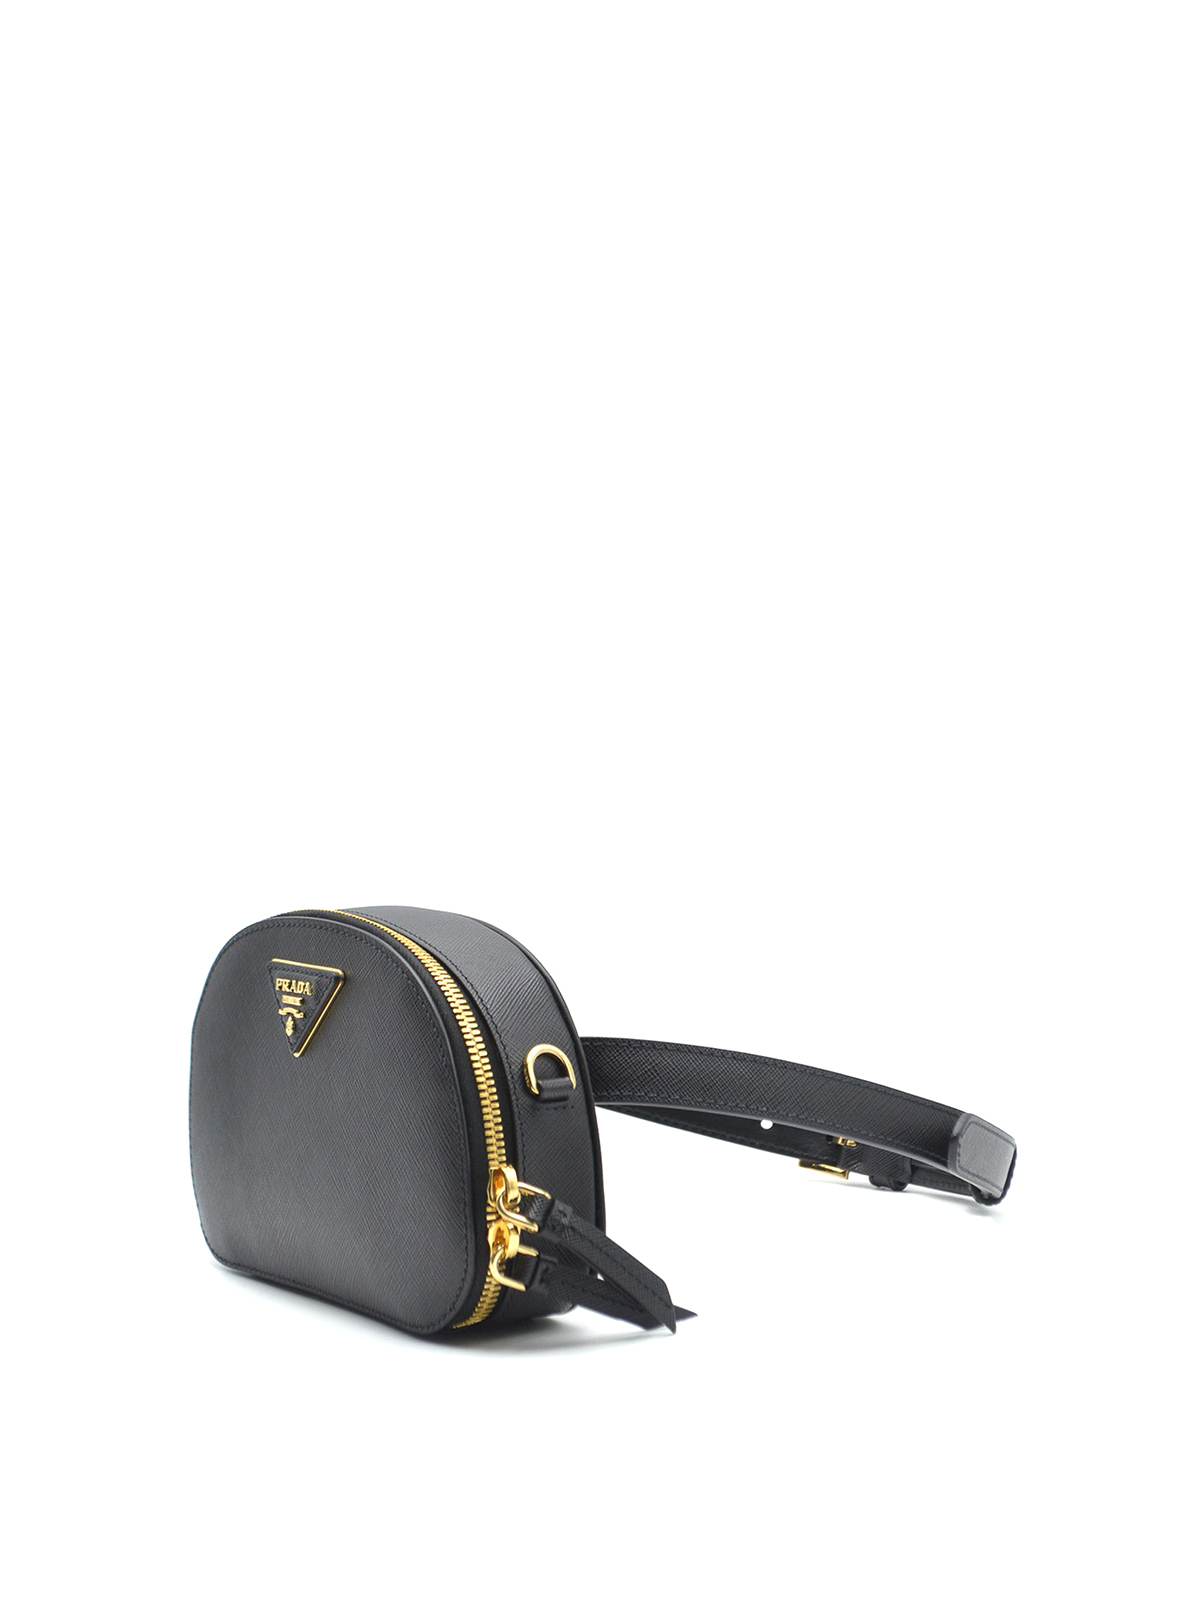 Odette saffiano leather belt bag